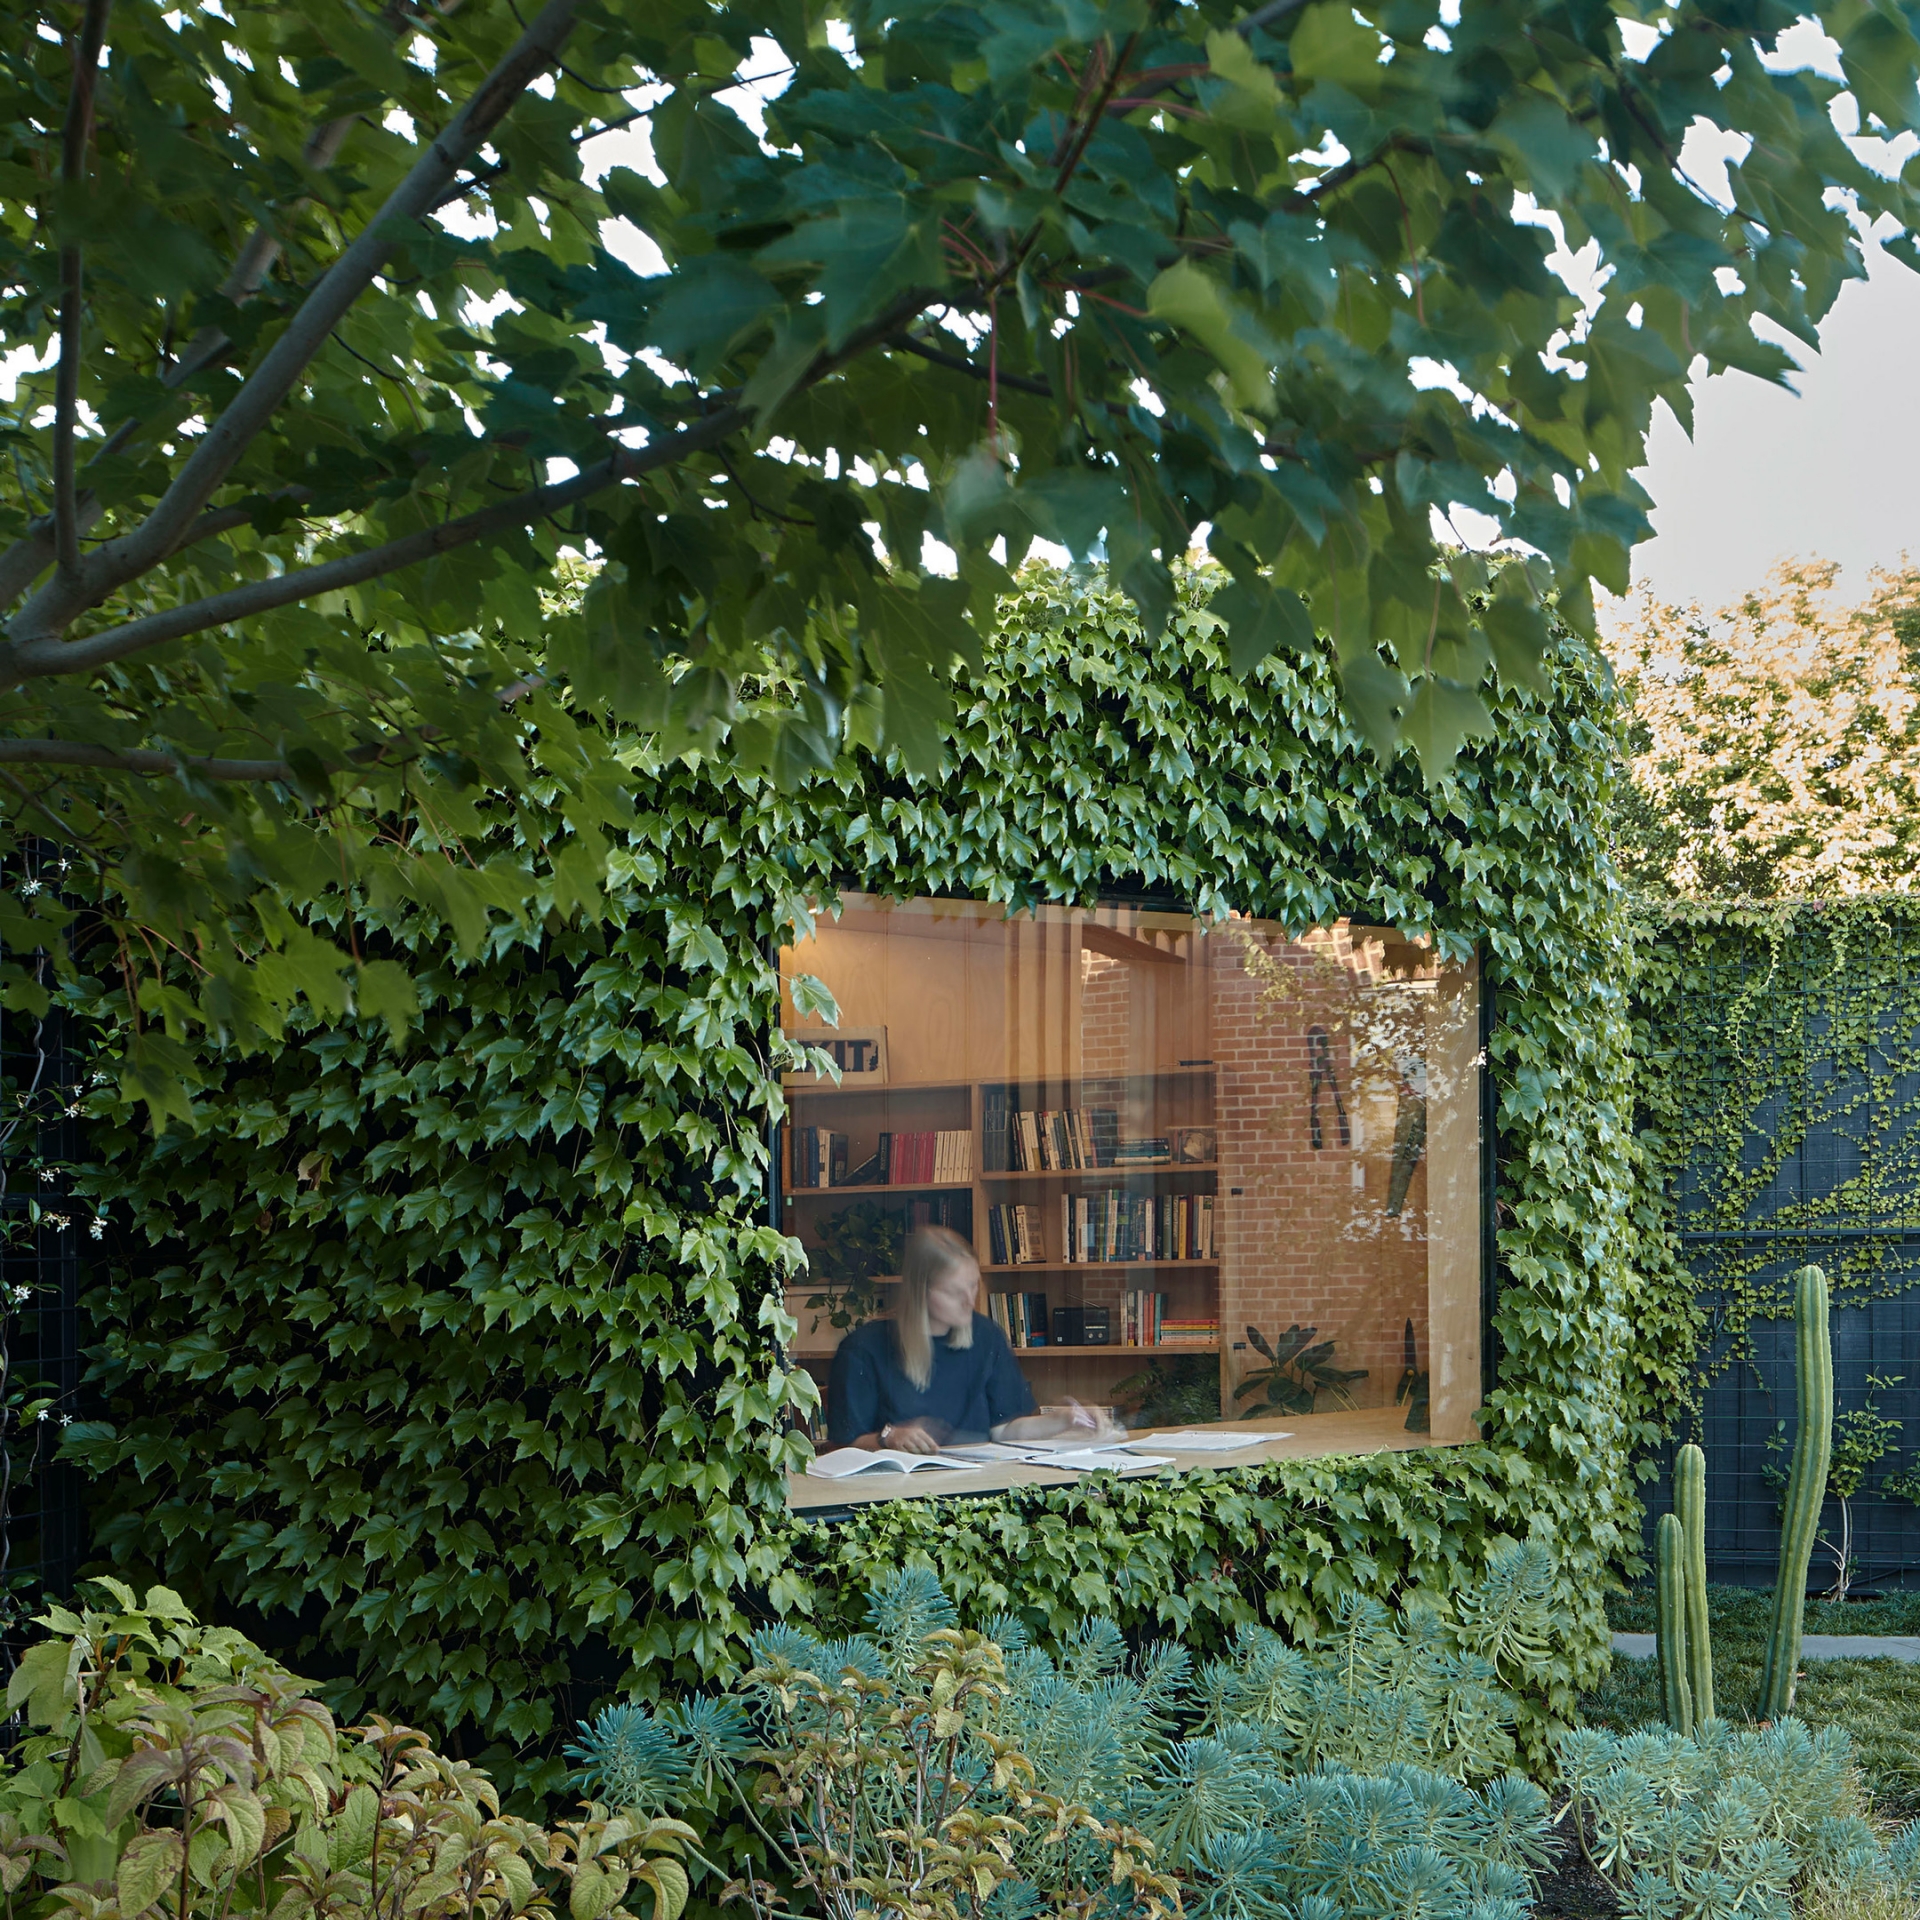 Writer's Shed tại Melbourne (Úc) được KTS Matt Gibson thiết kế như một “ngôi nhà nhỏ trong vườn”. Dù diện tích chỉ vỏn vẹn 10m² nhưng vô cùng nên thơ nhờ mặt tiền xanh mướt của cây cối qua ô cửa kính.